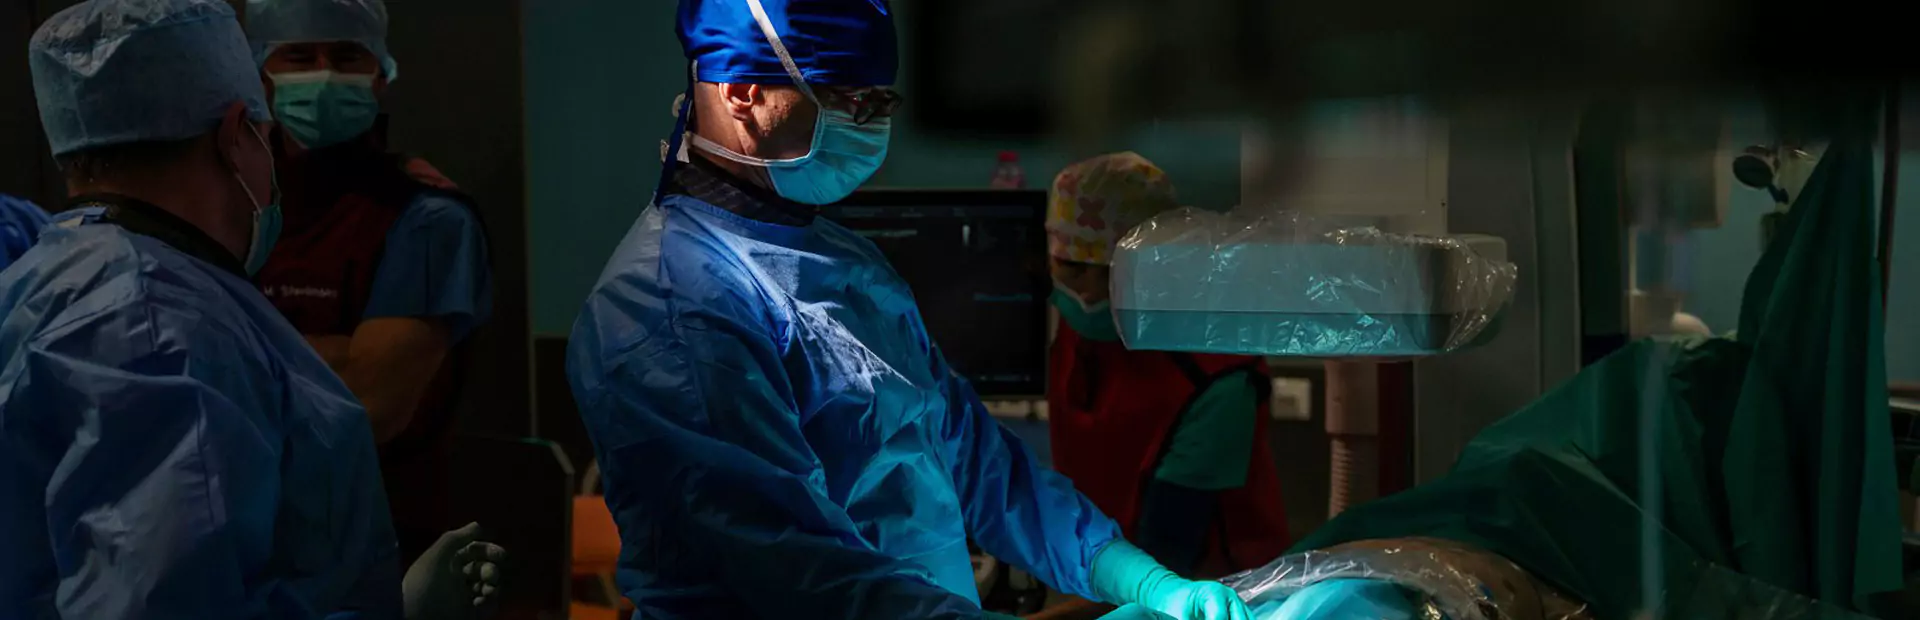 Pierwsze zabiegi implantacji nowoczesnego, bezelektrodowego stymulatora serca Aveir VR 